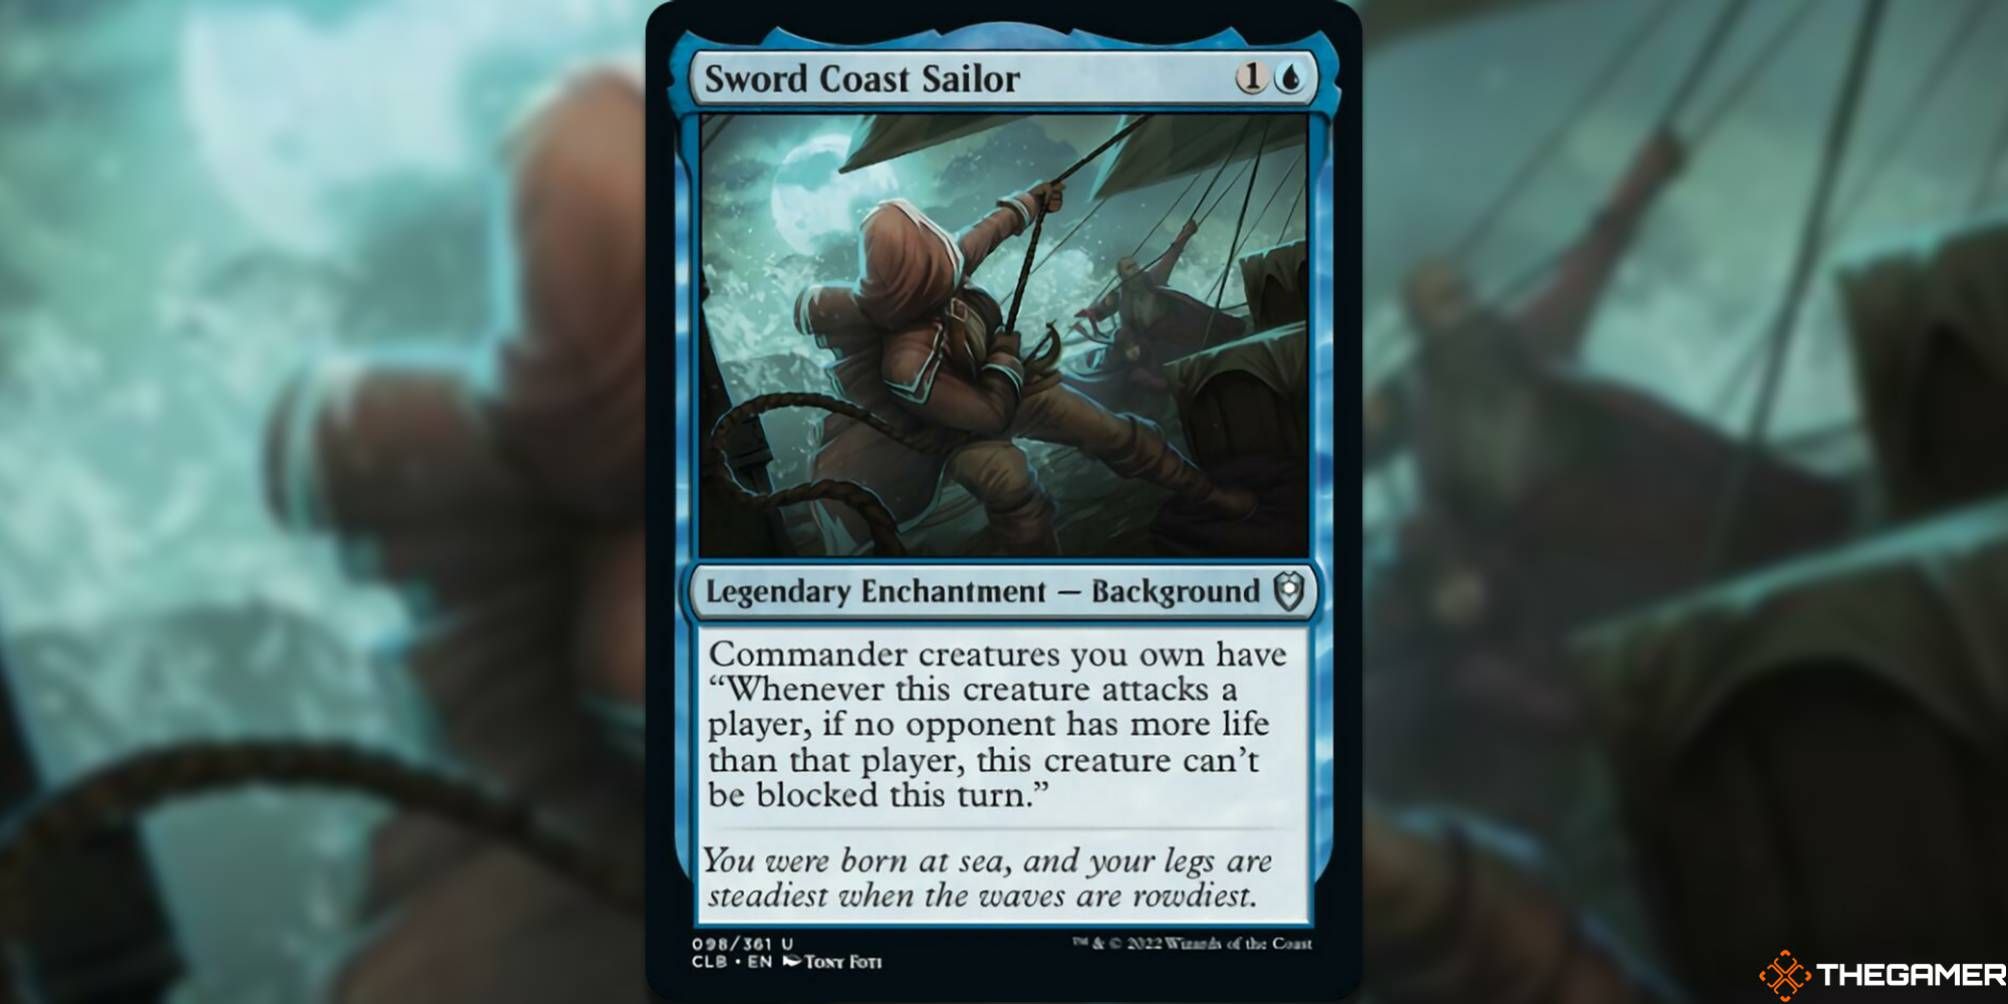 Sword Coast Sailor